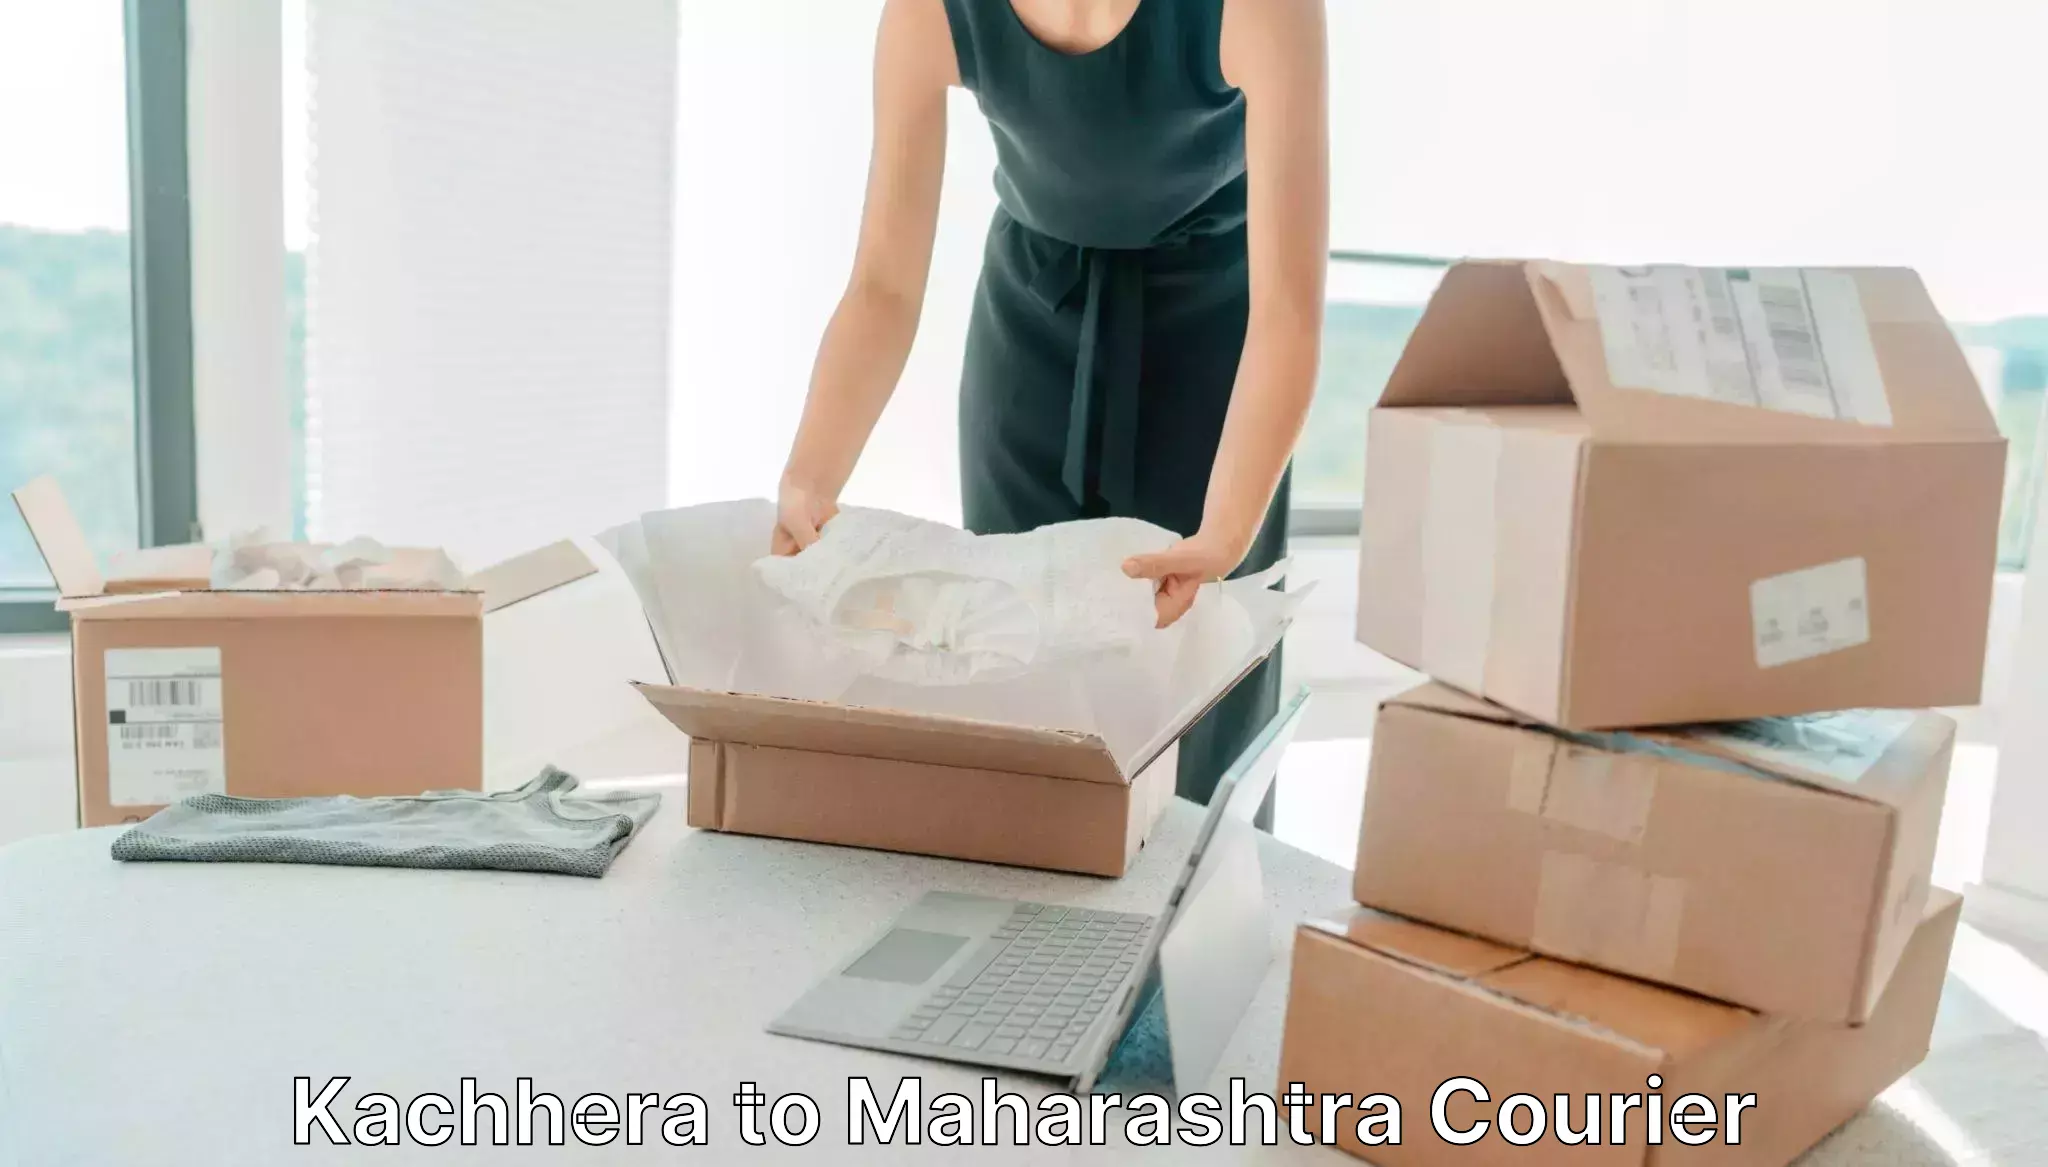 Urgent courier needs Kachhera to Maharashtra